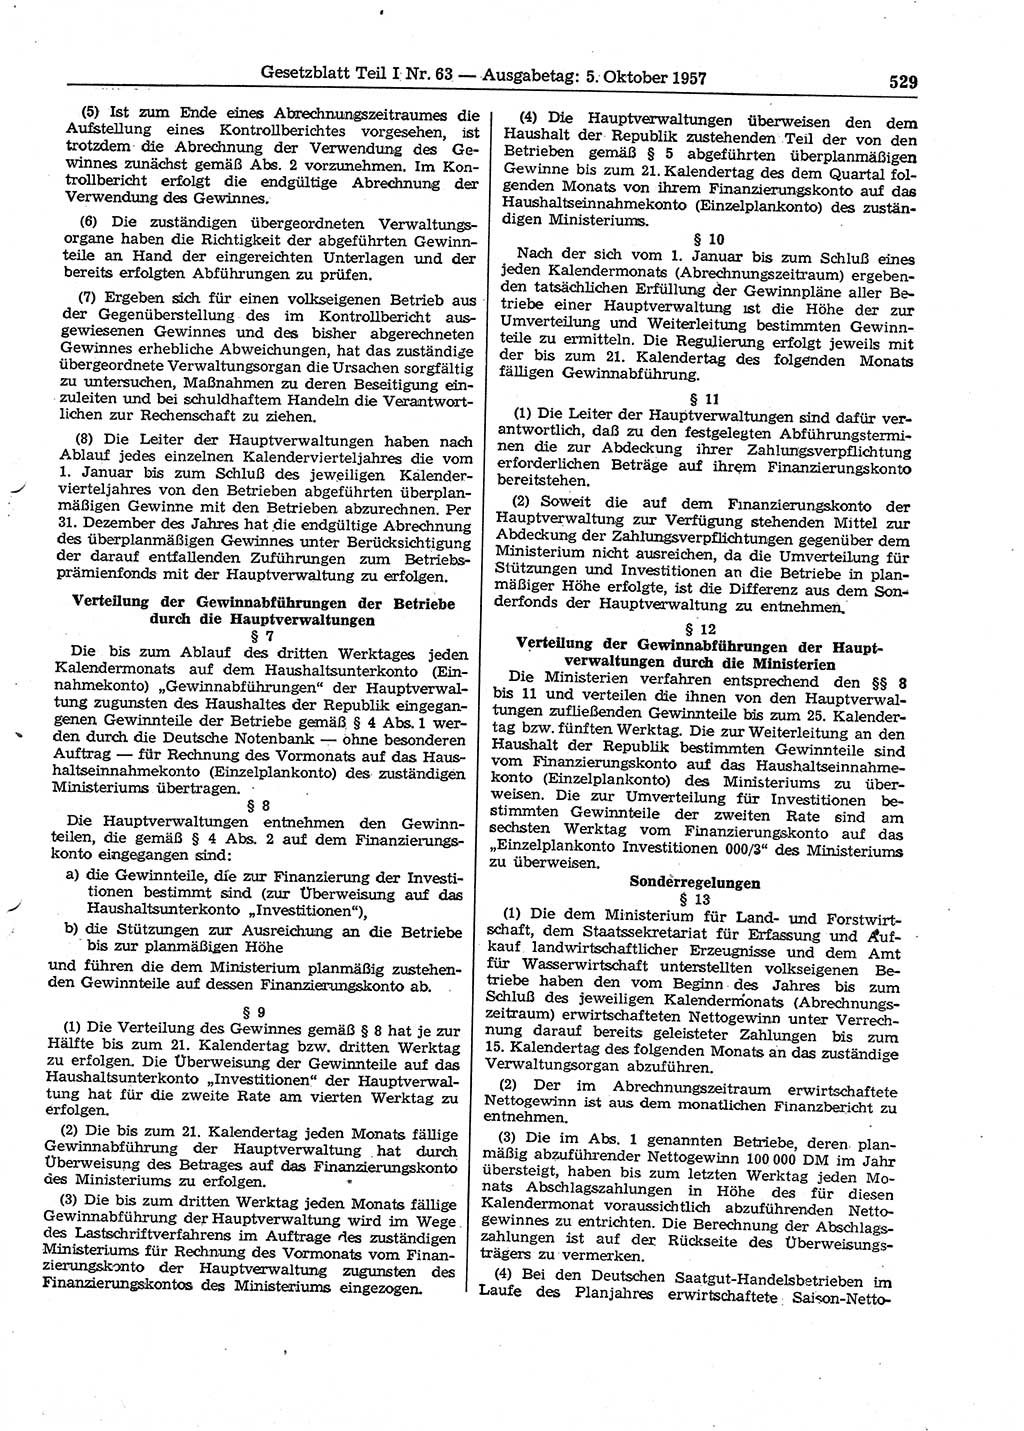 Gesetzblatt (GBl.) der Deutschen Demokratischen Republik (DDR) Teil Ⅰ 1957, Seite 529 (GBl. DDR Ⅰ 1957, S. 529)